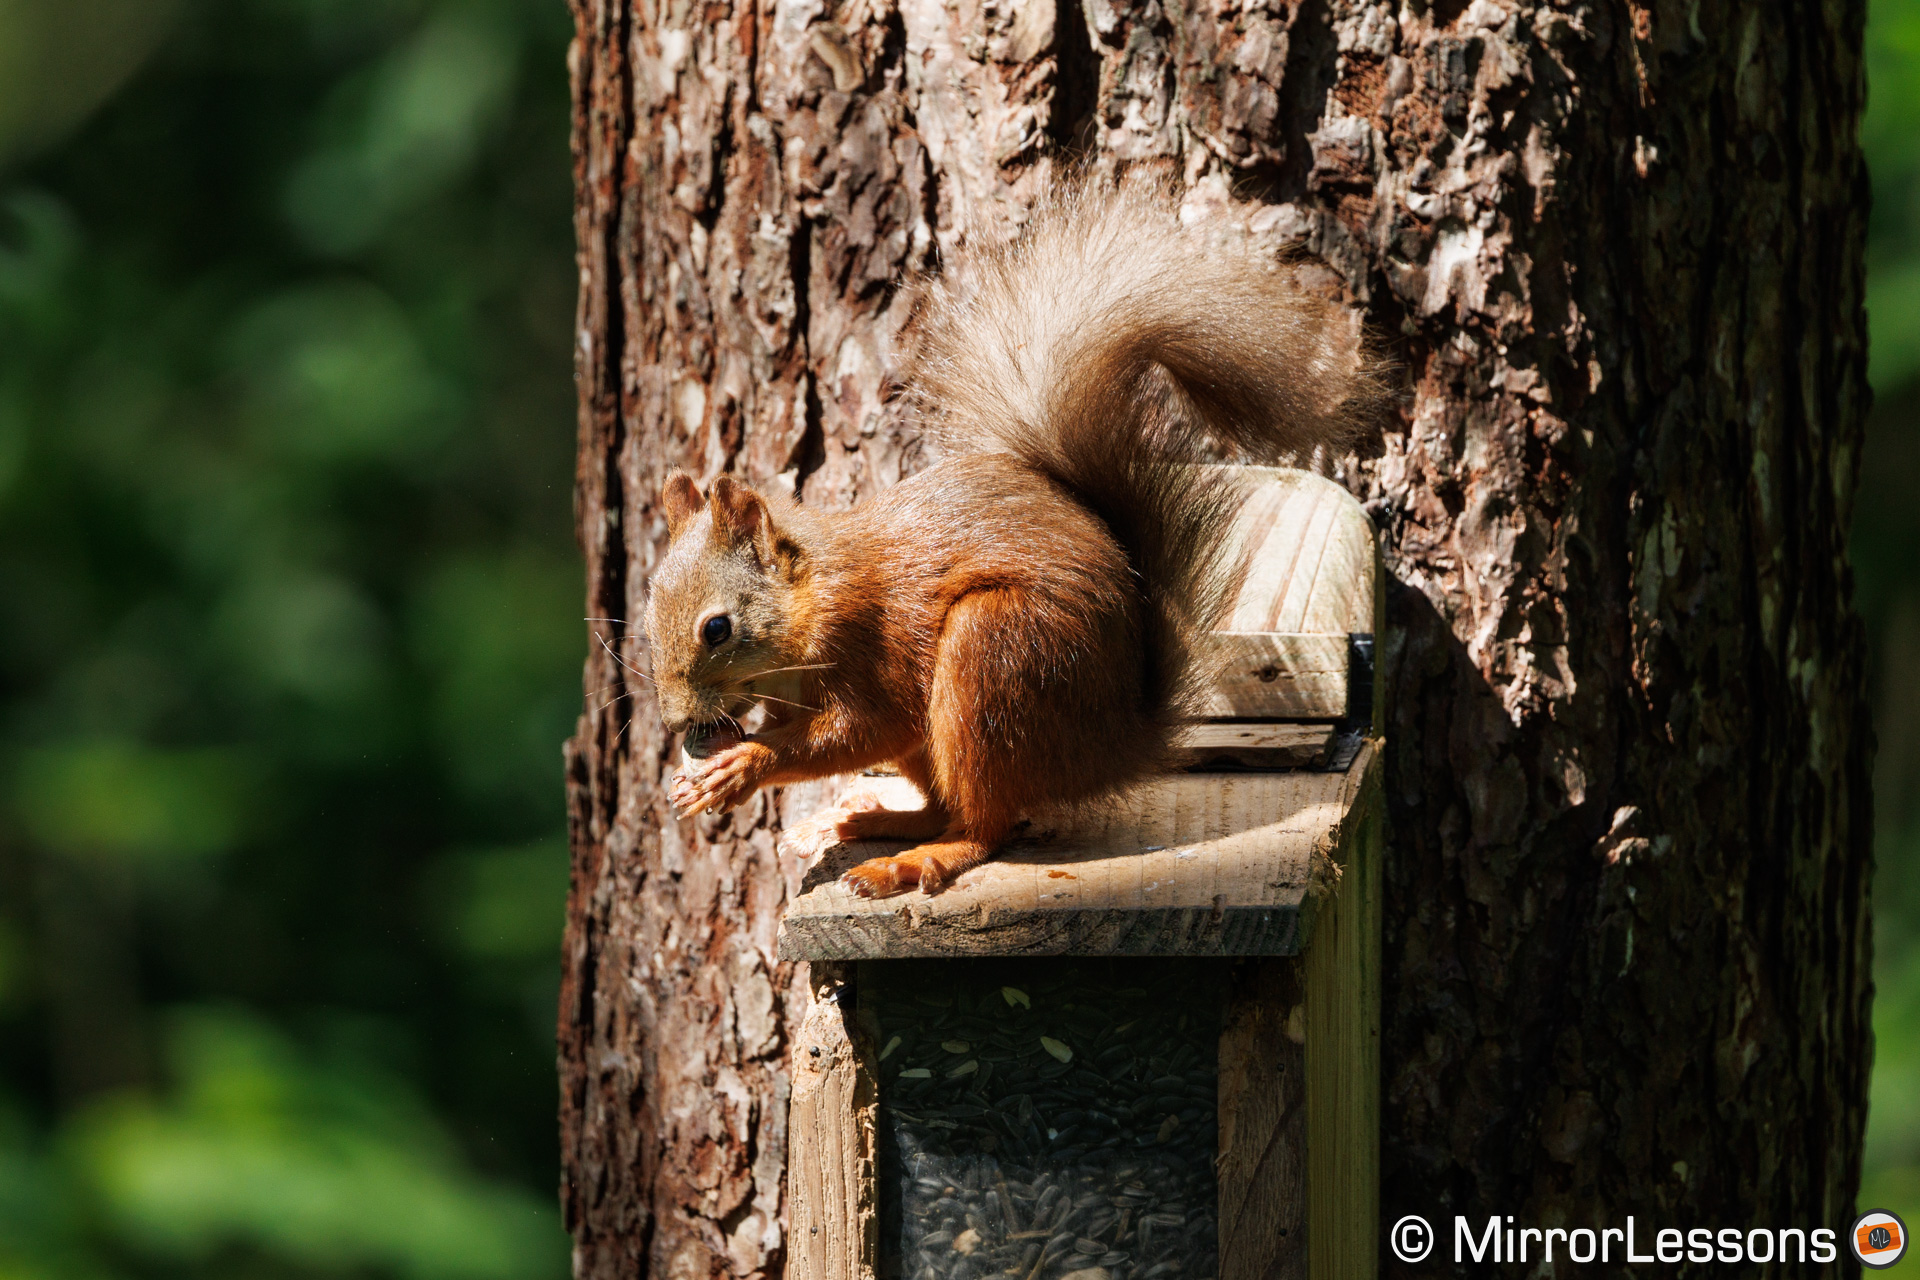 Red squirrel in focus